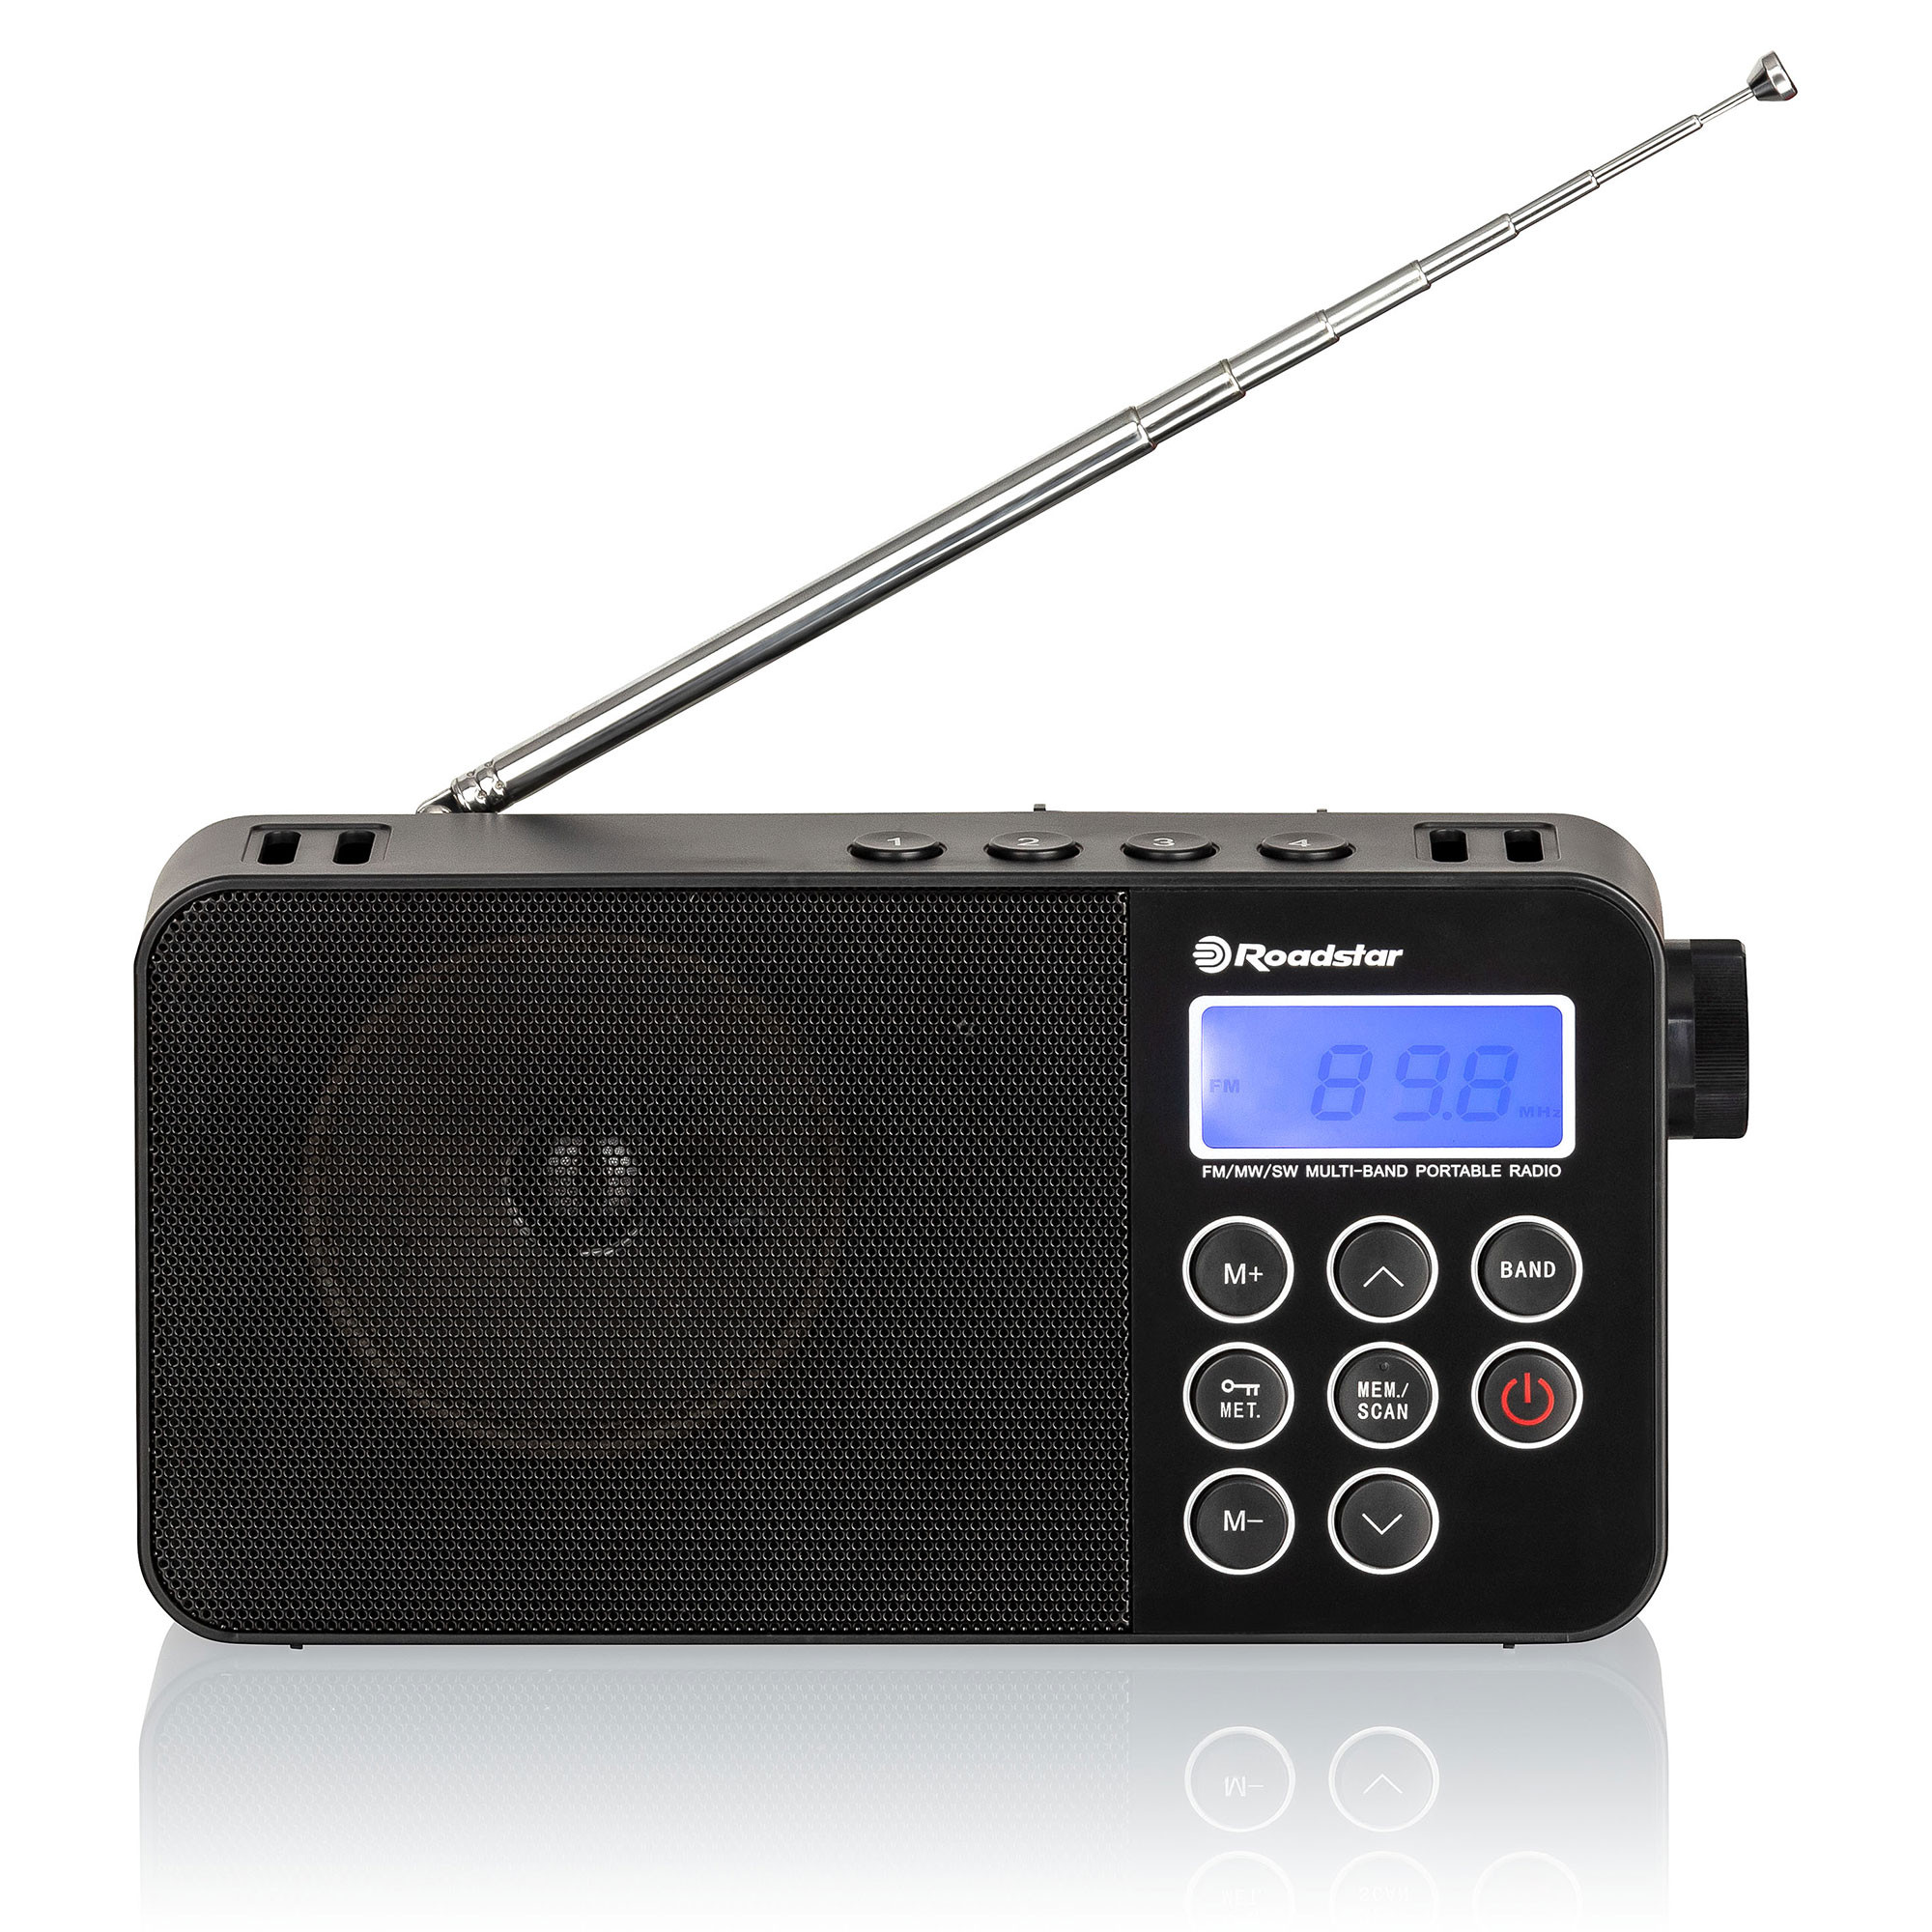 Radios Pequeñas: Compra Tu Radio De Pequeñas Dimensiones